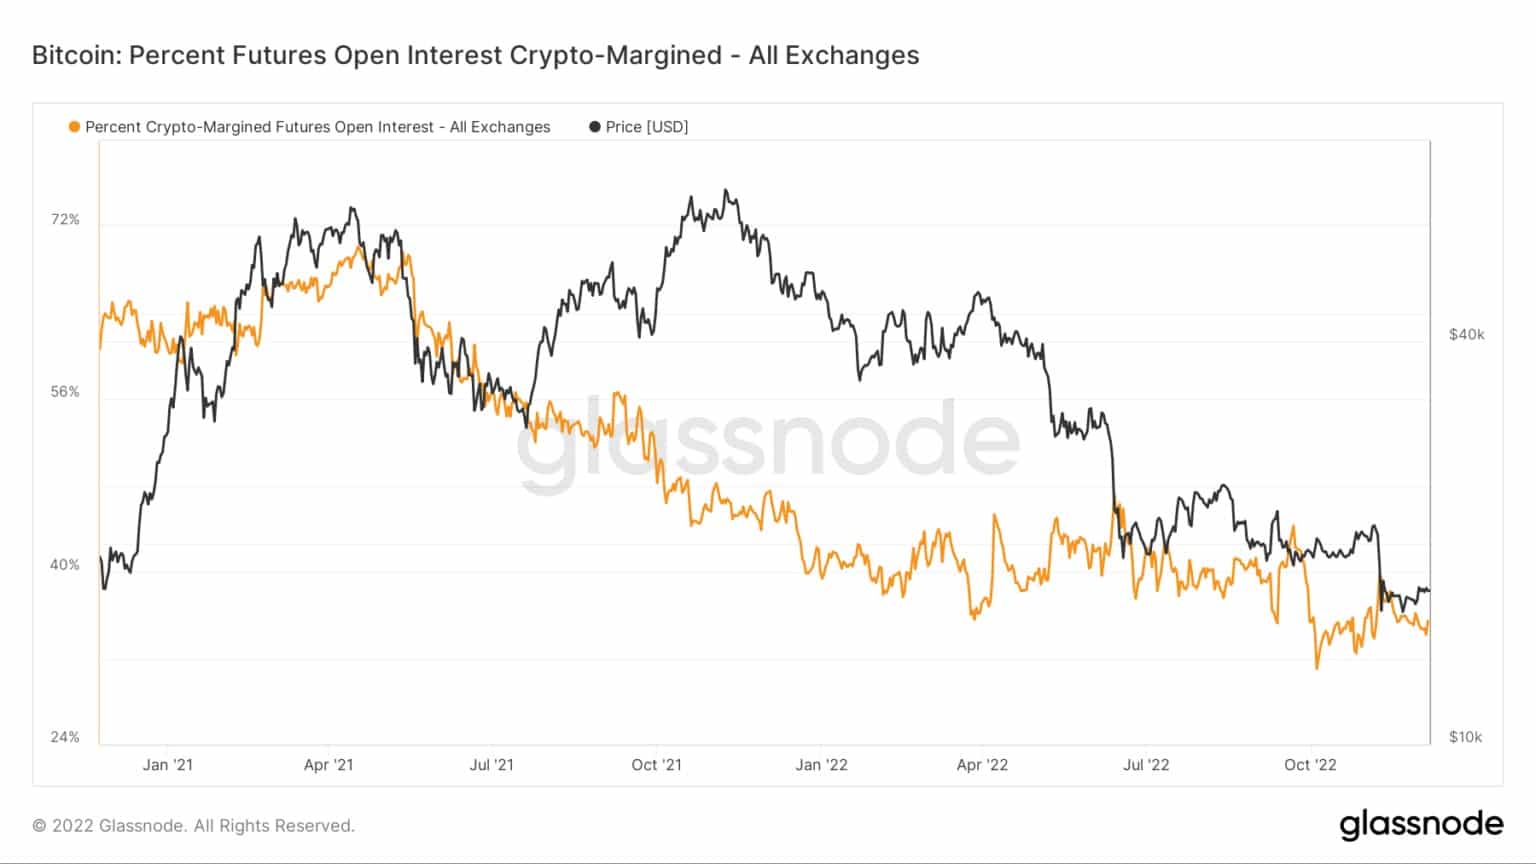 Grafiek met het percentage crypto-margined Bitcoin futures open interest van juni 2021 tot december 2022 (Bron: Glassnode)